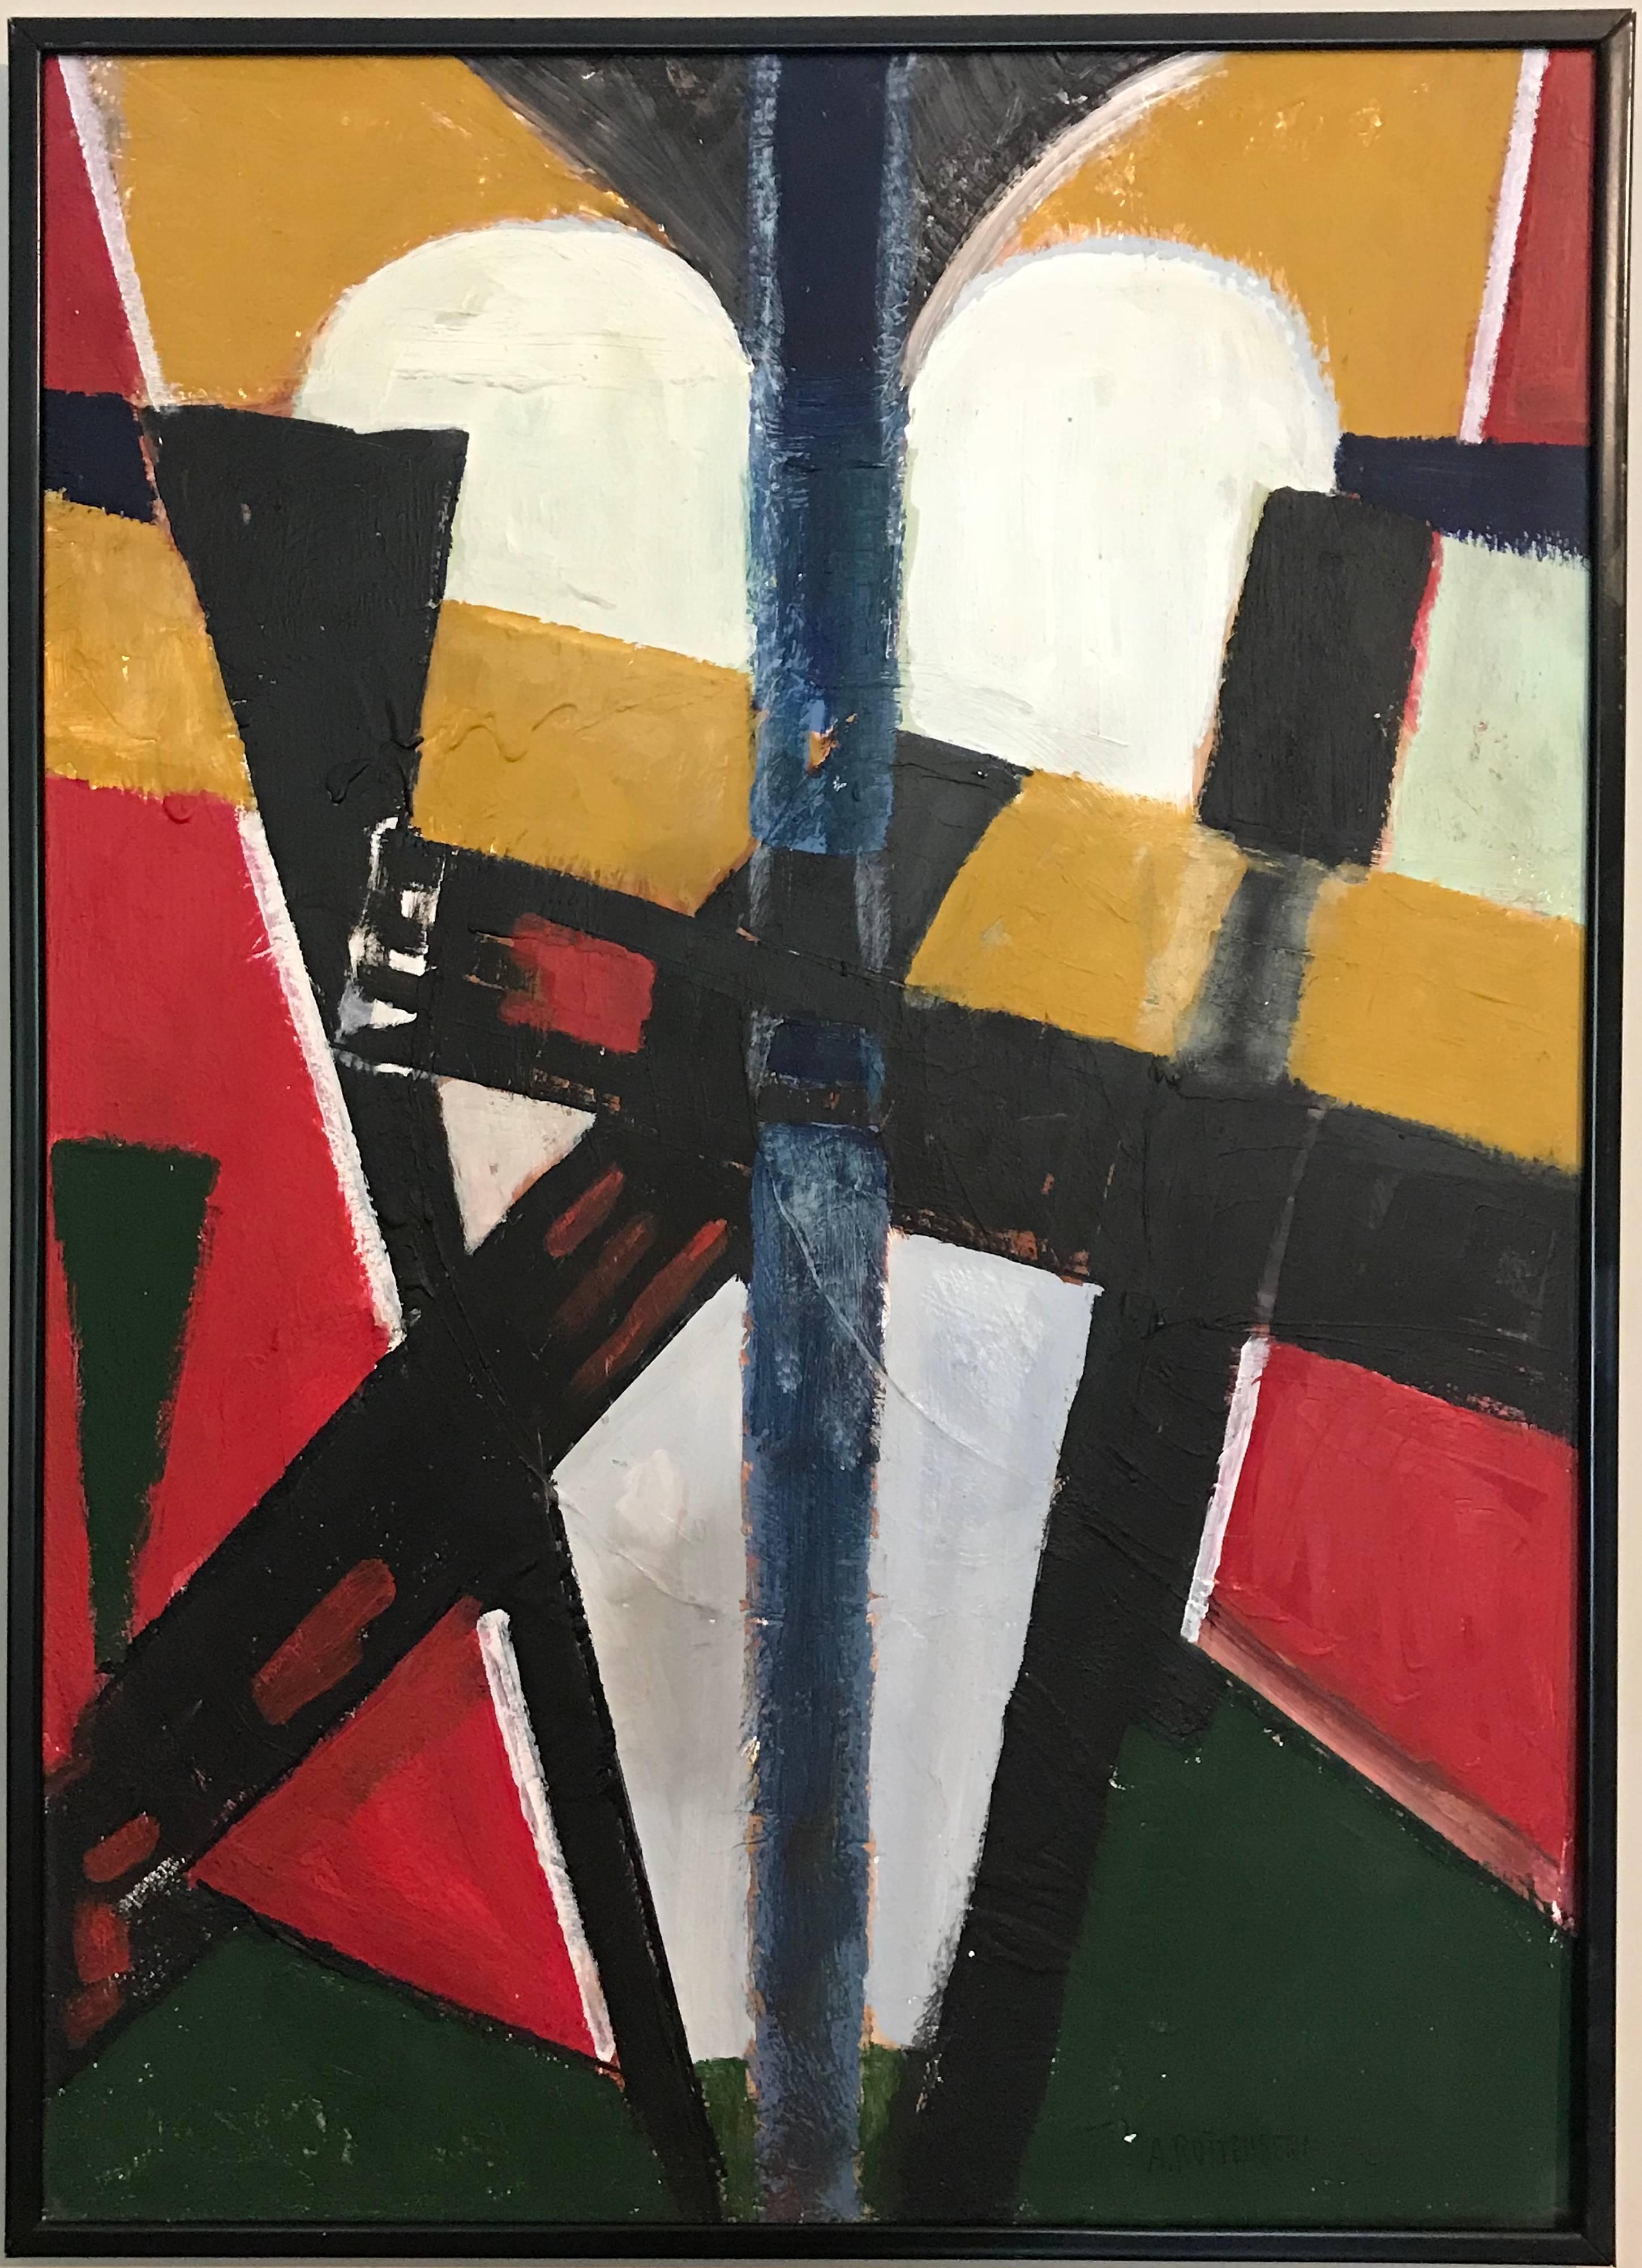 Kubistische Komposition
von Armand Rottenberg (Französisch 1903-2000)
signiert in der unteren Ecke, ca. 1980er Jahre
ölgemälde auf Karton, gerahmt

Gerahmt 28 x 20,5 Zoll

Beeindruckendes kubistisches Originalgemälde des französischen abstrakten